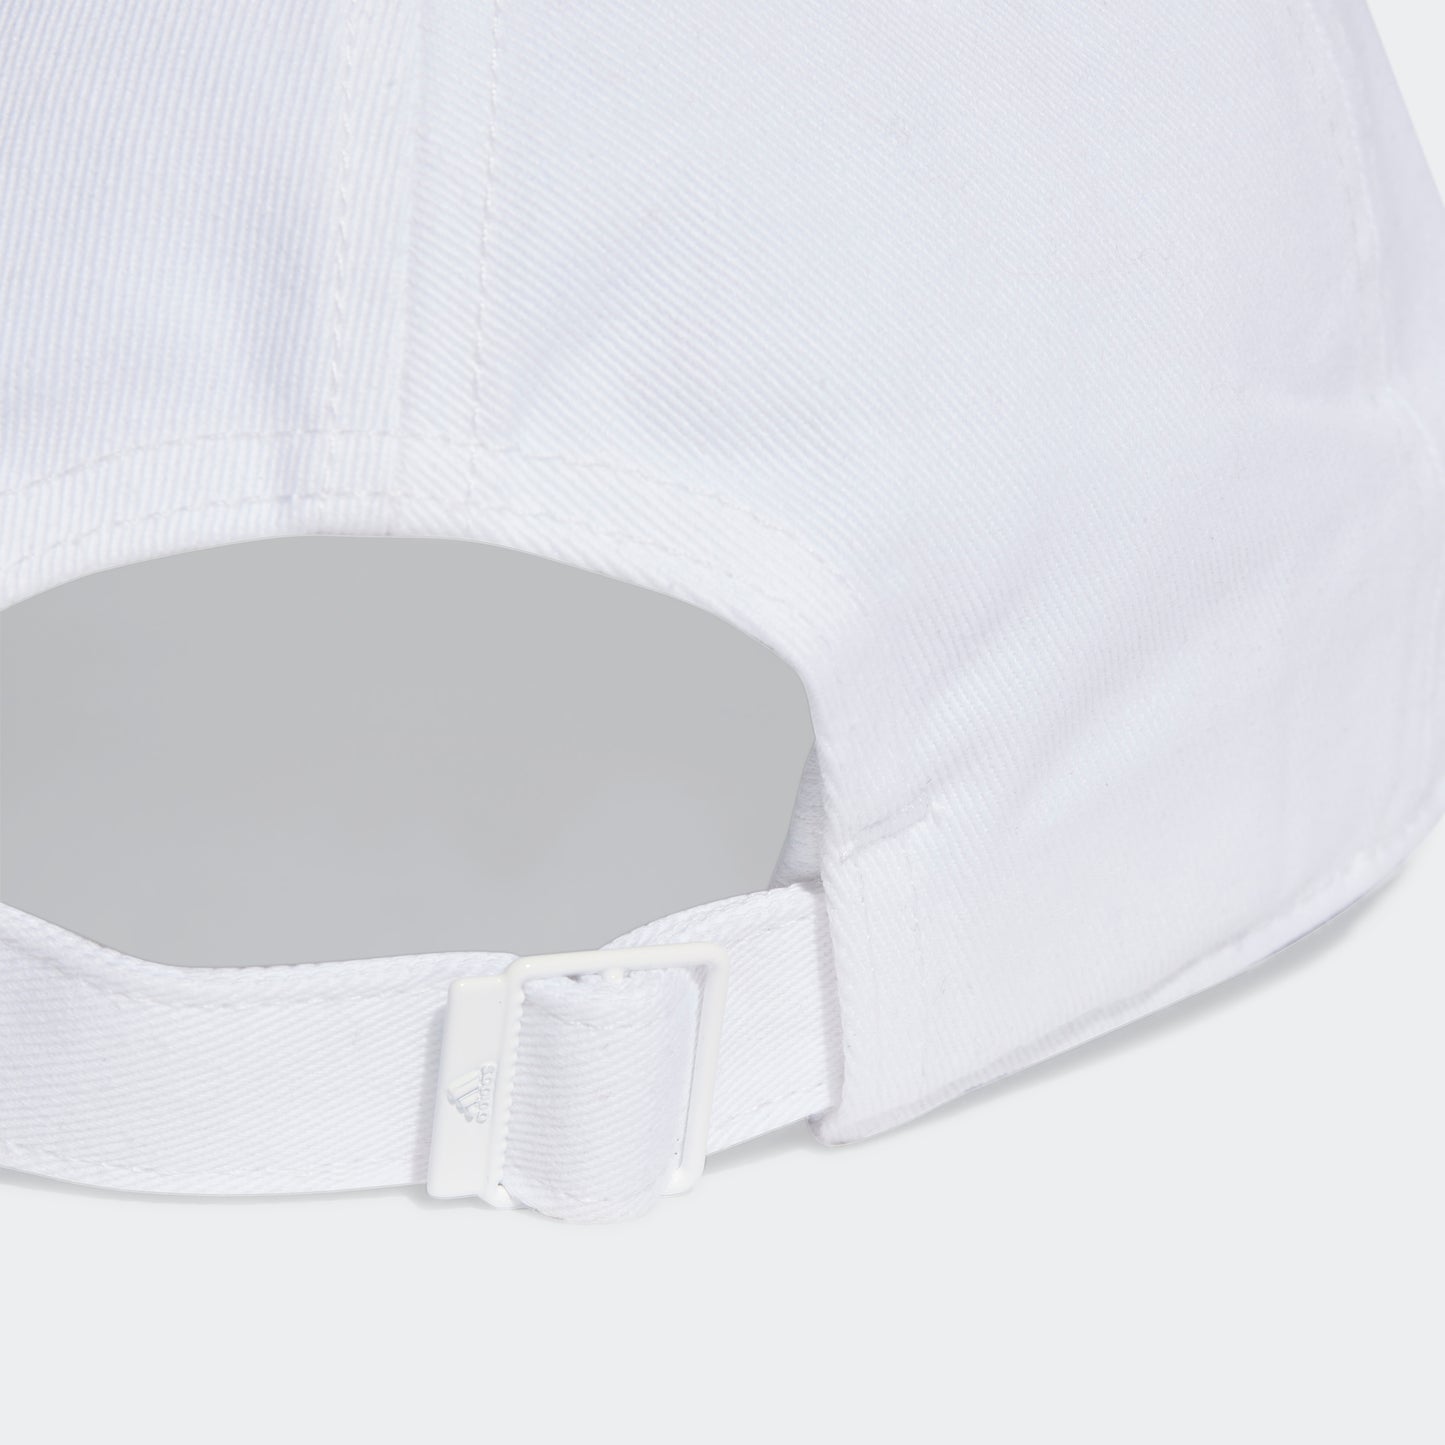 כובע 3-STRIPES COTTON TWILL בצבע לבן ושחור